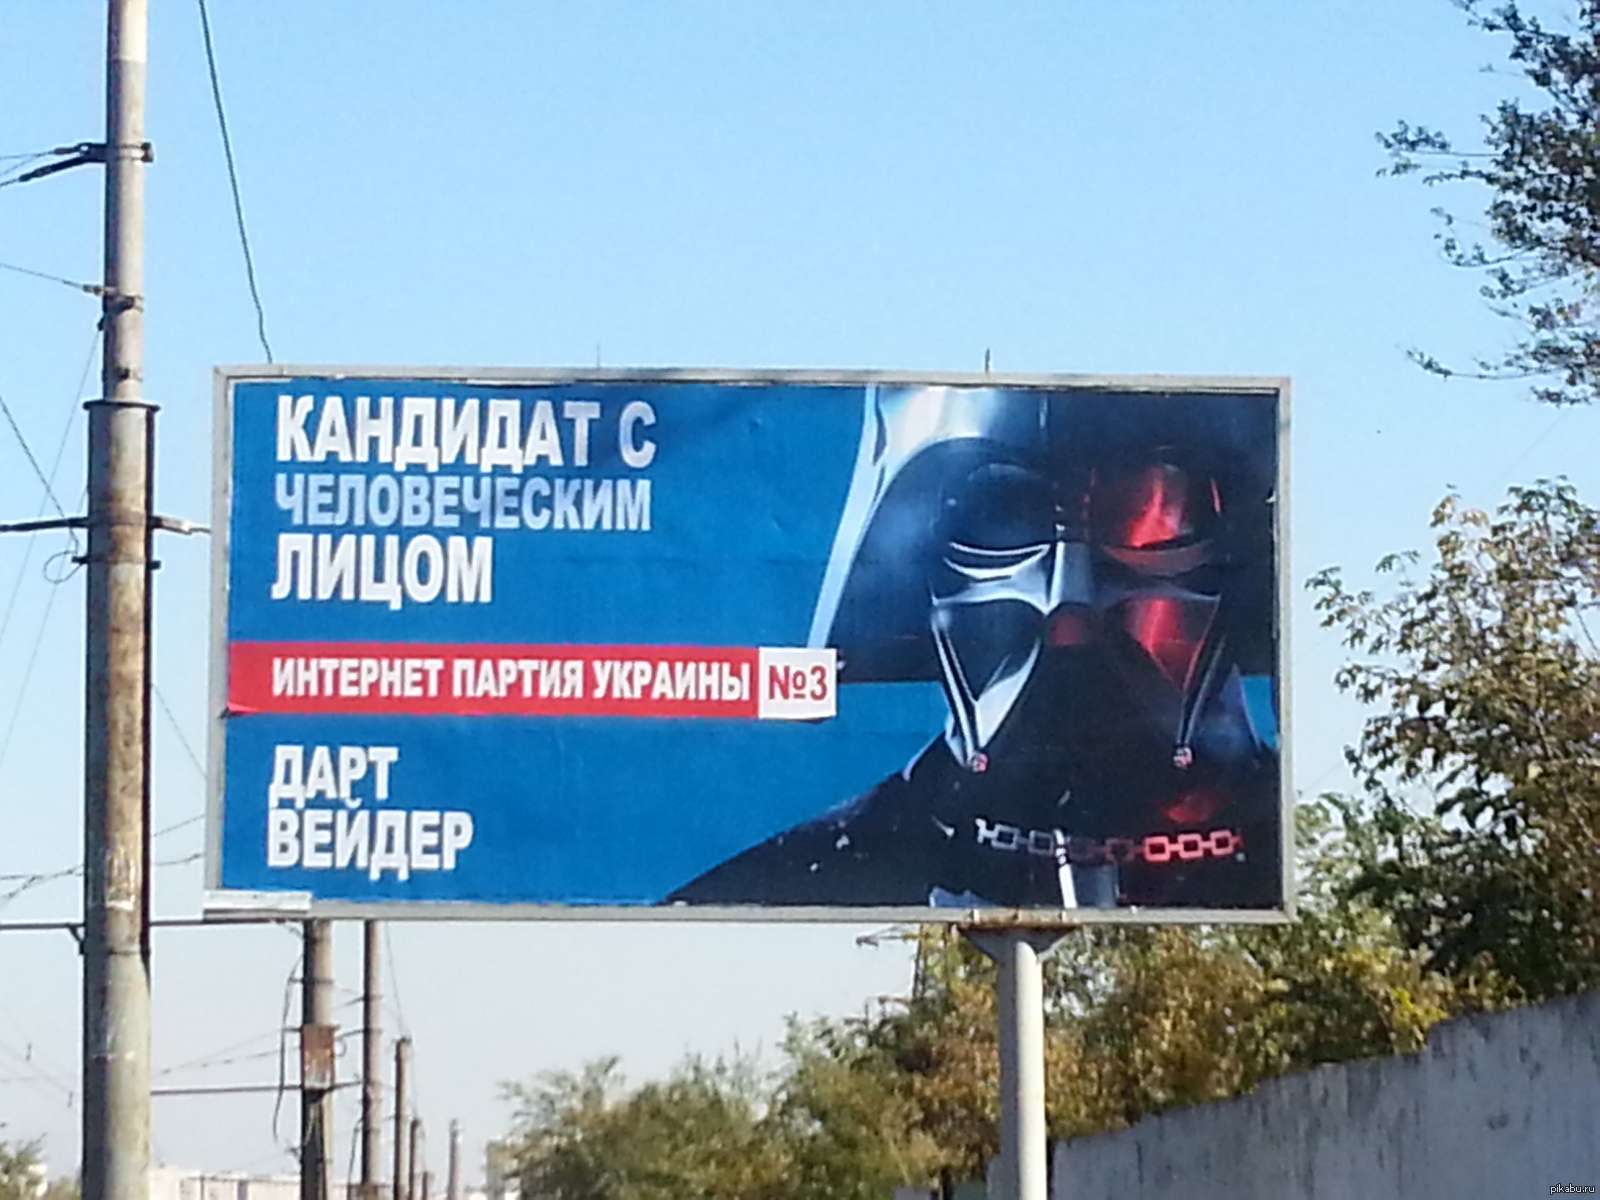 Интернет партия украины. Украинские рекламные щиты. Билборды на Украине. Интернет партия Украины Дарт Вейдер. Интернет партия Украины билборды.